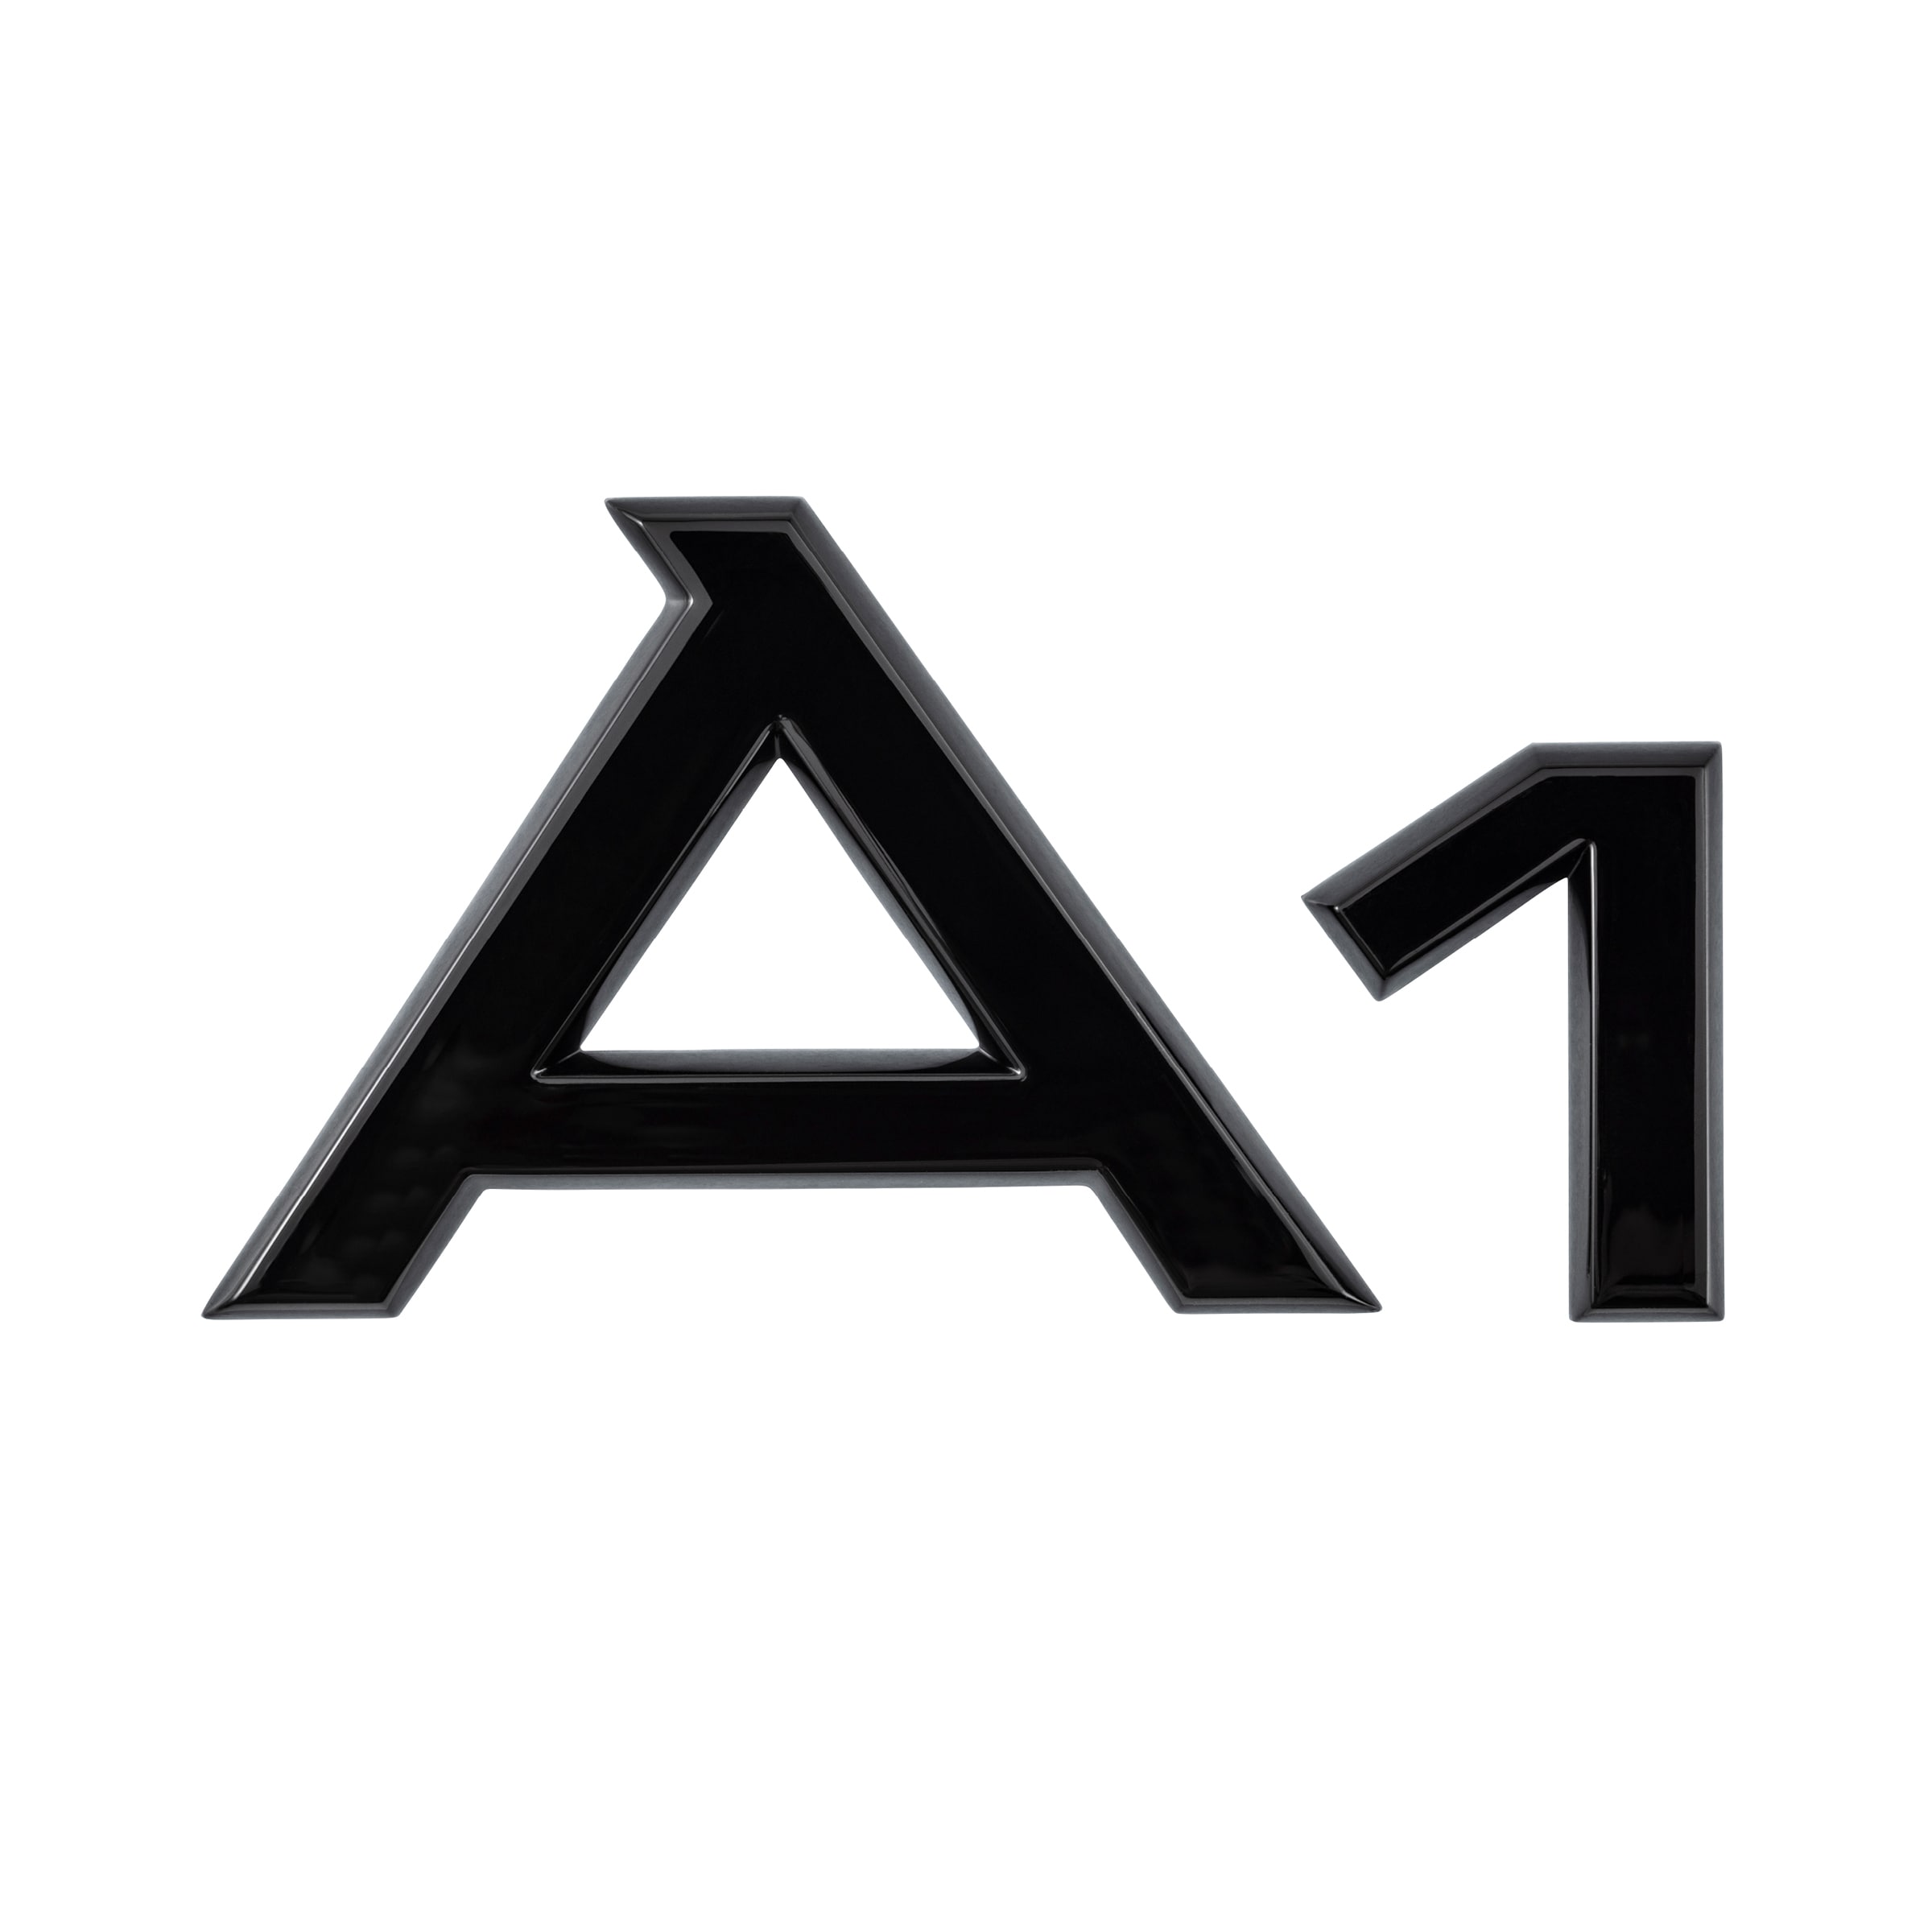 Modellbezeichnung A1 in Schwarz